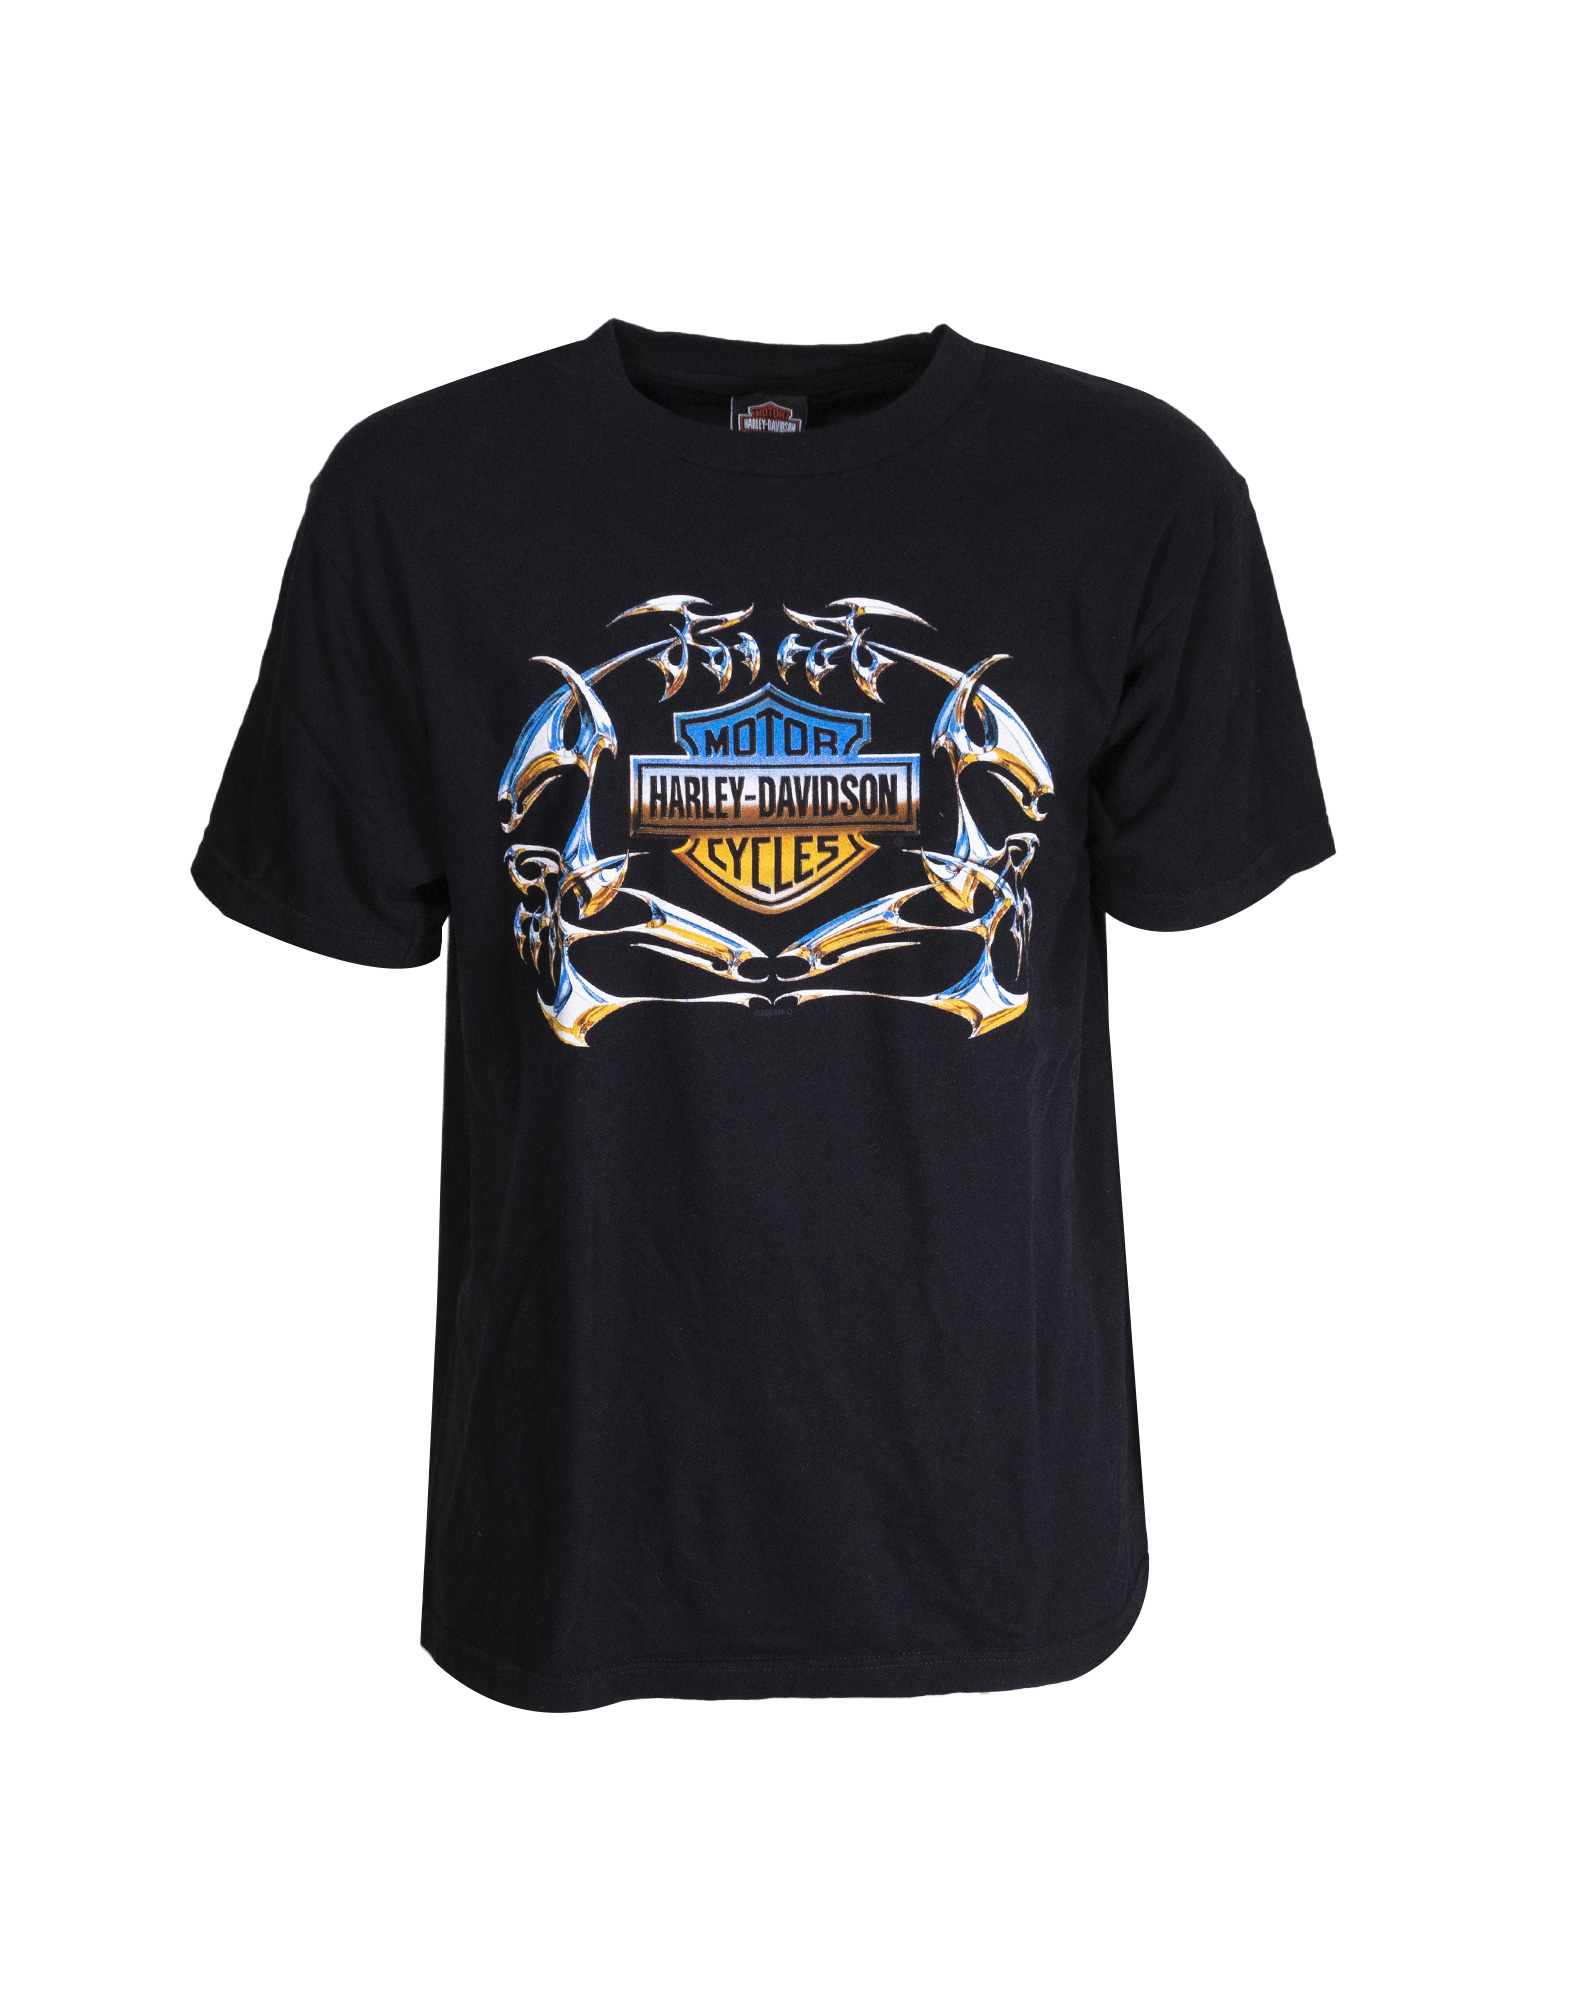 Harley Davidson - Paris Etoile t-shirt